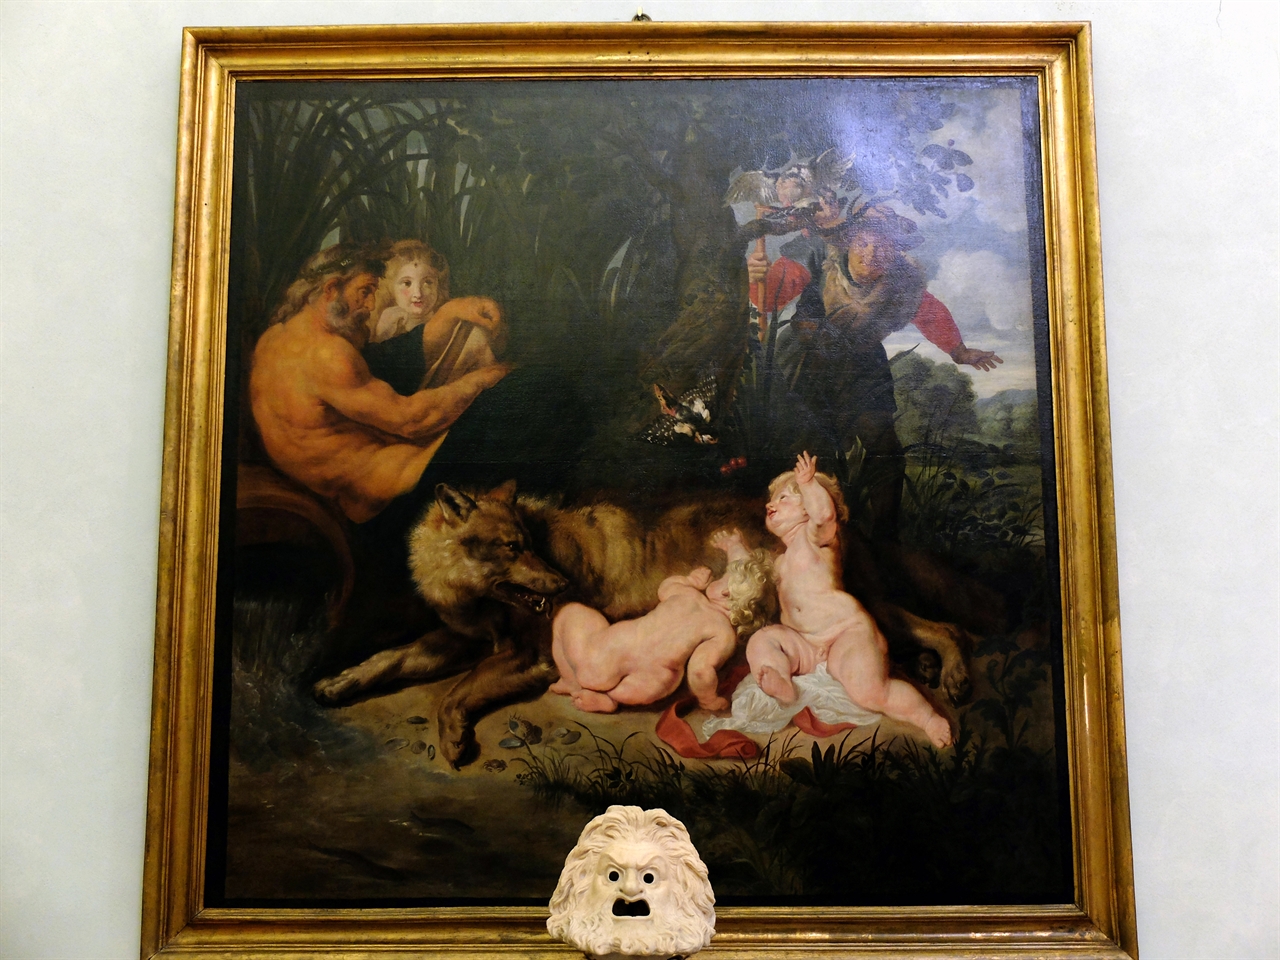 페트로 폴 루벤스 '로물루스와 레무스' 로마, 카피톨리니 박물관. 늑대의 젖을 먹고 있는 로물루스와 레무스를 오른쪽의 목동 파우스툴루스가 발견하는 장면입니다.